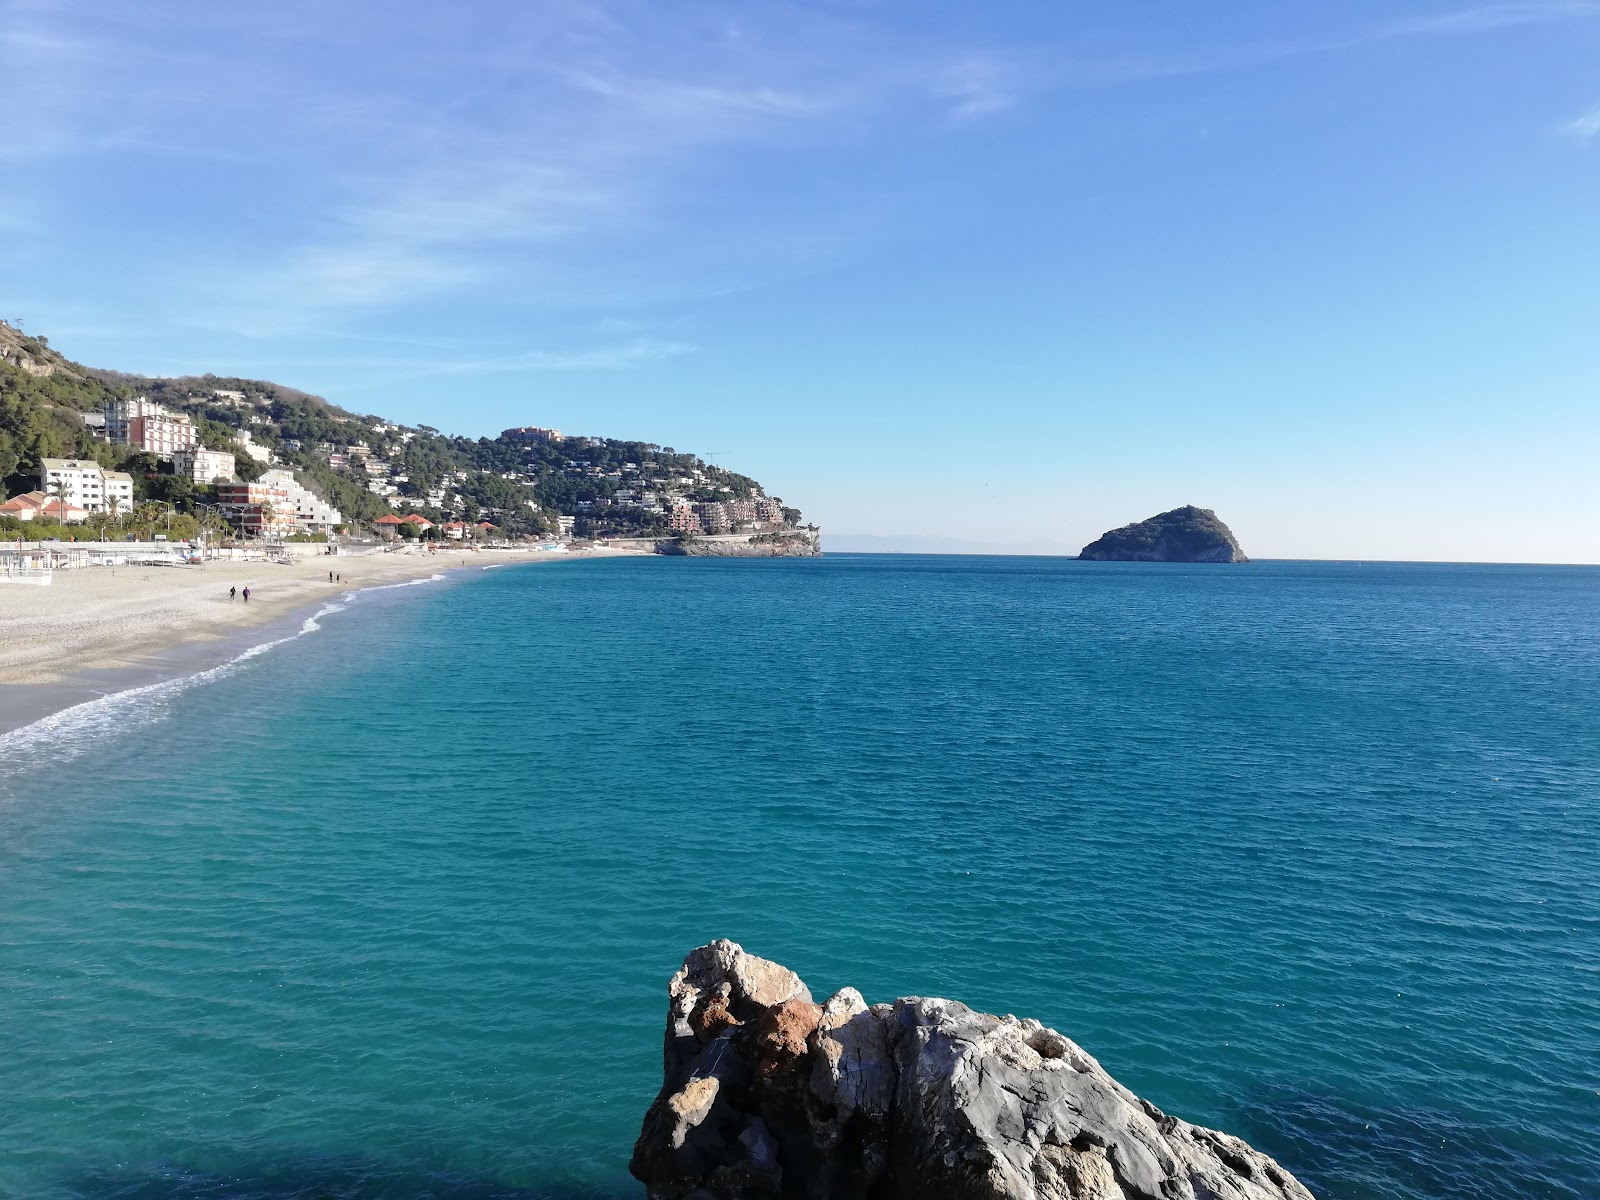 Photo of Spiaggia di Spotorno with long straight shore